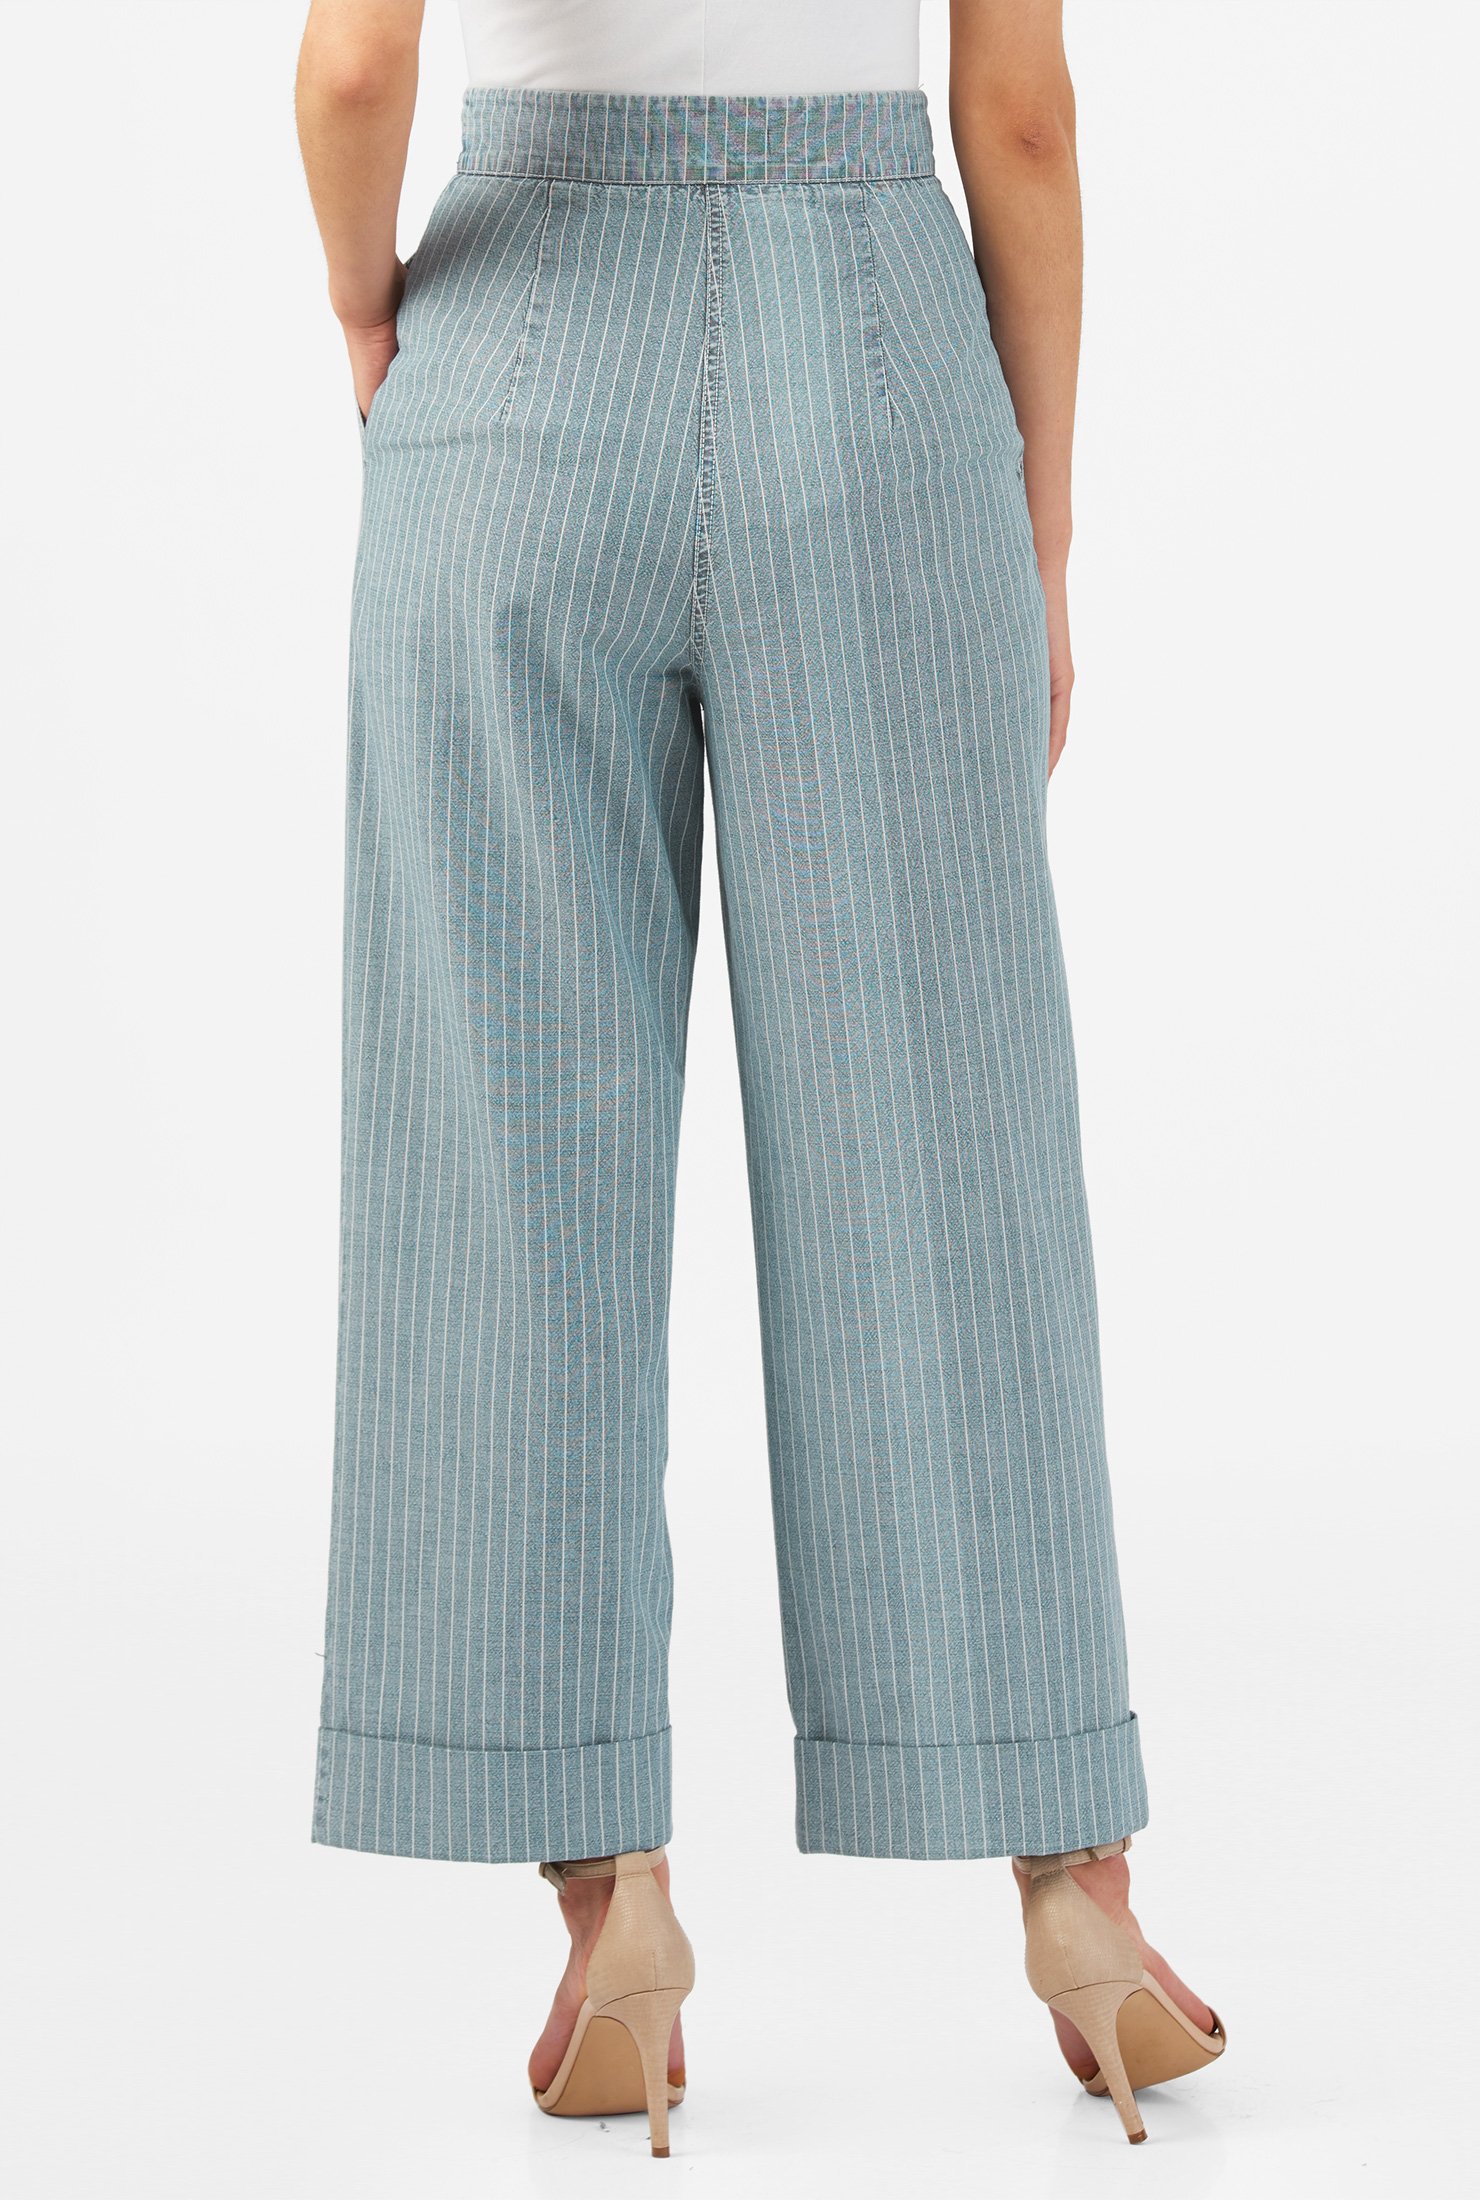 Shop High waist cotton chambray denim stripe jeans | eShakti